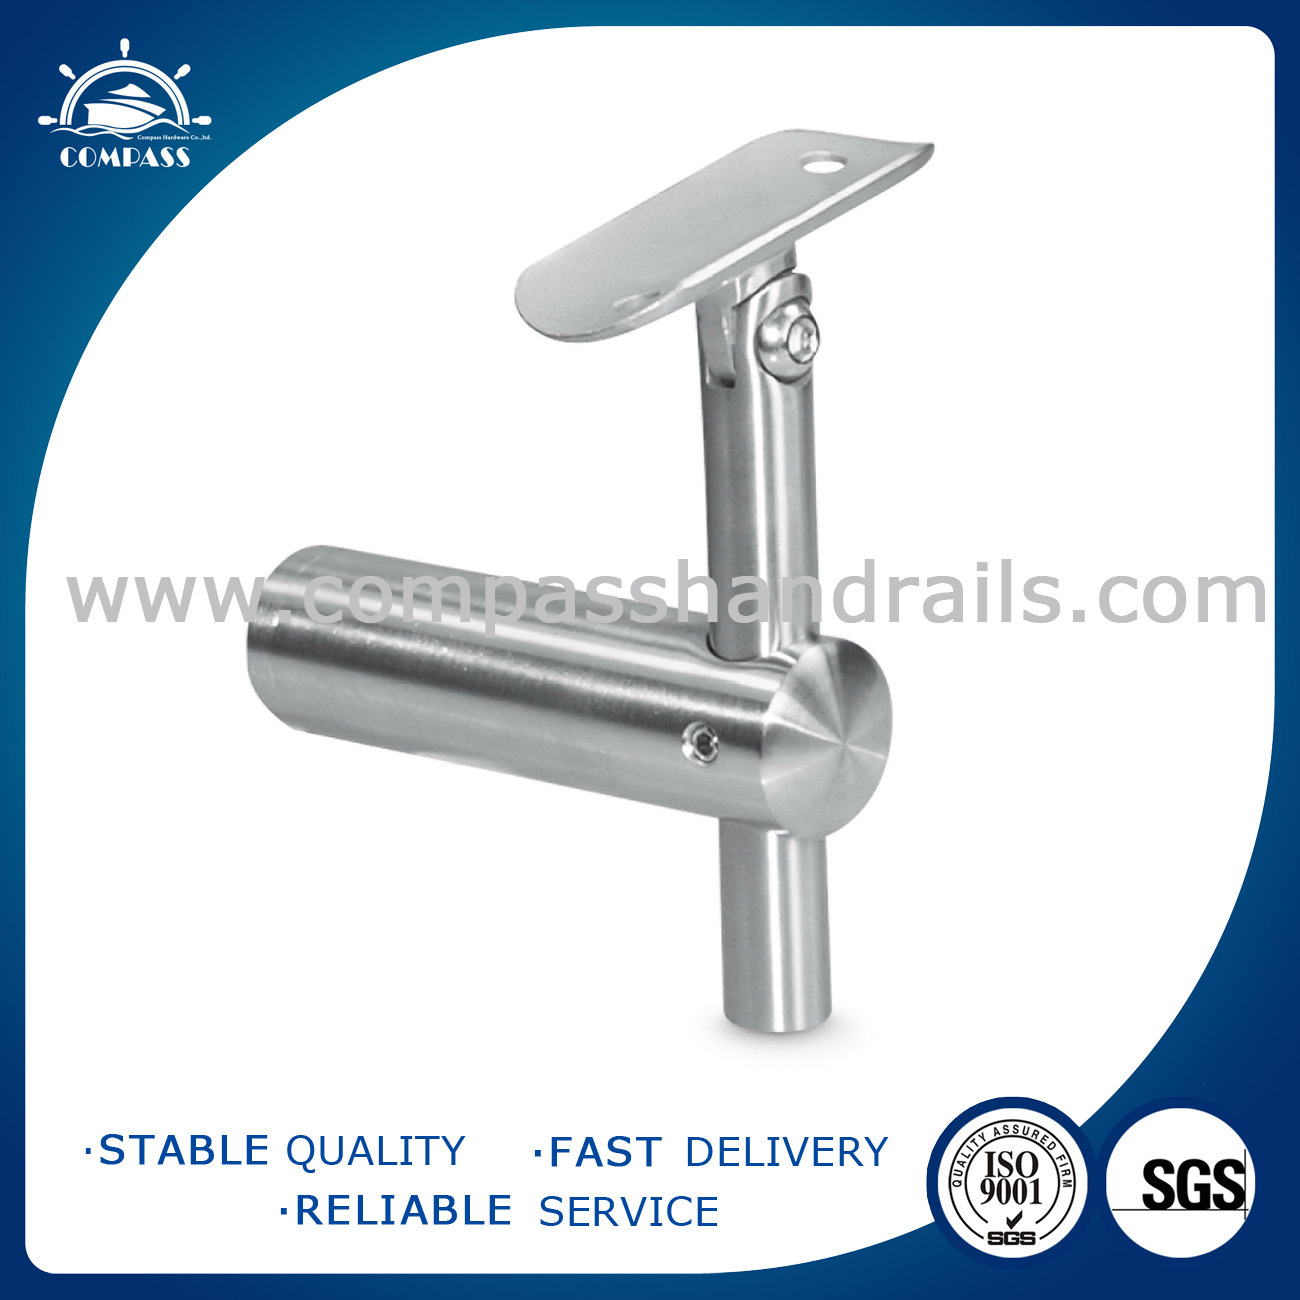 Stainless Steel Railing, Handrail, Balustrade, Glass Bracket, Glass Hardware